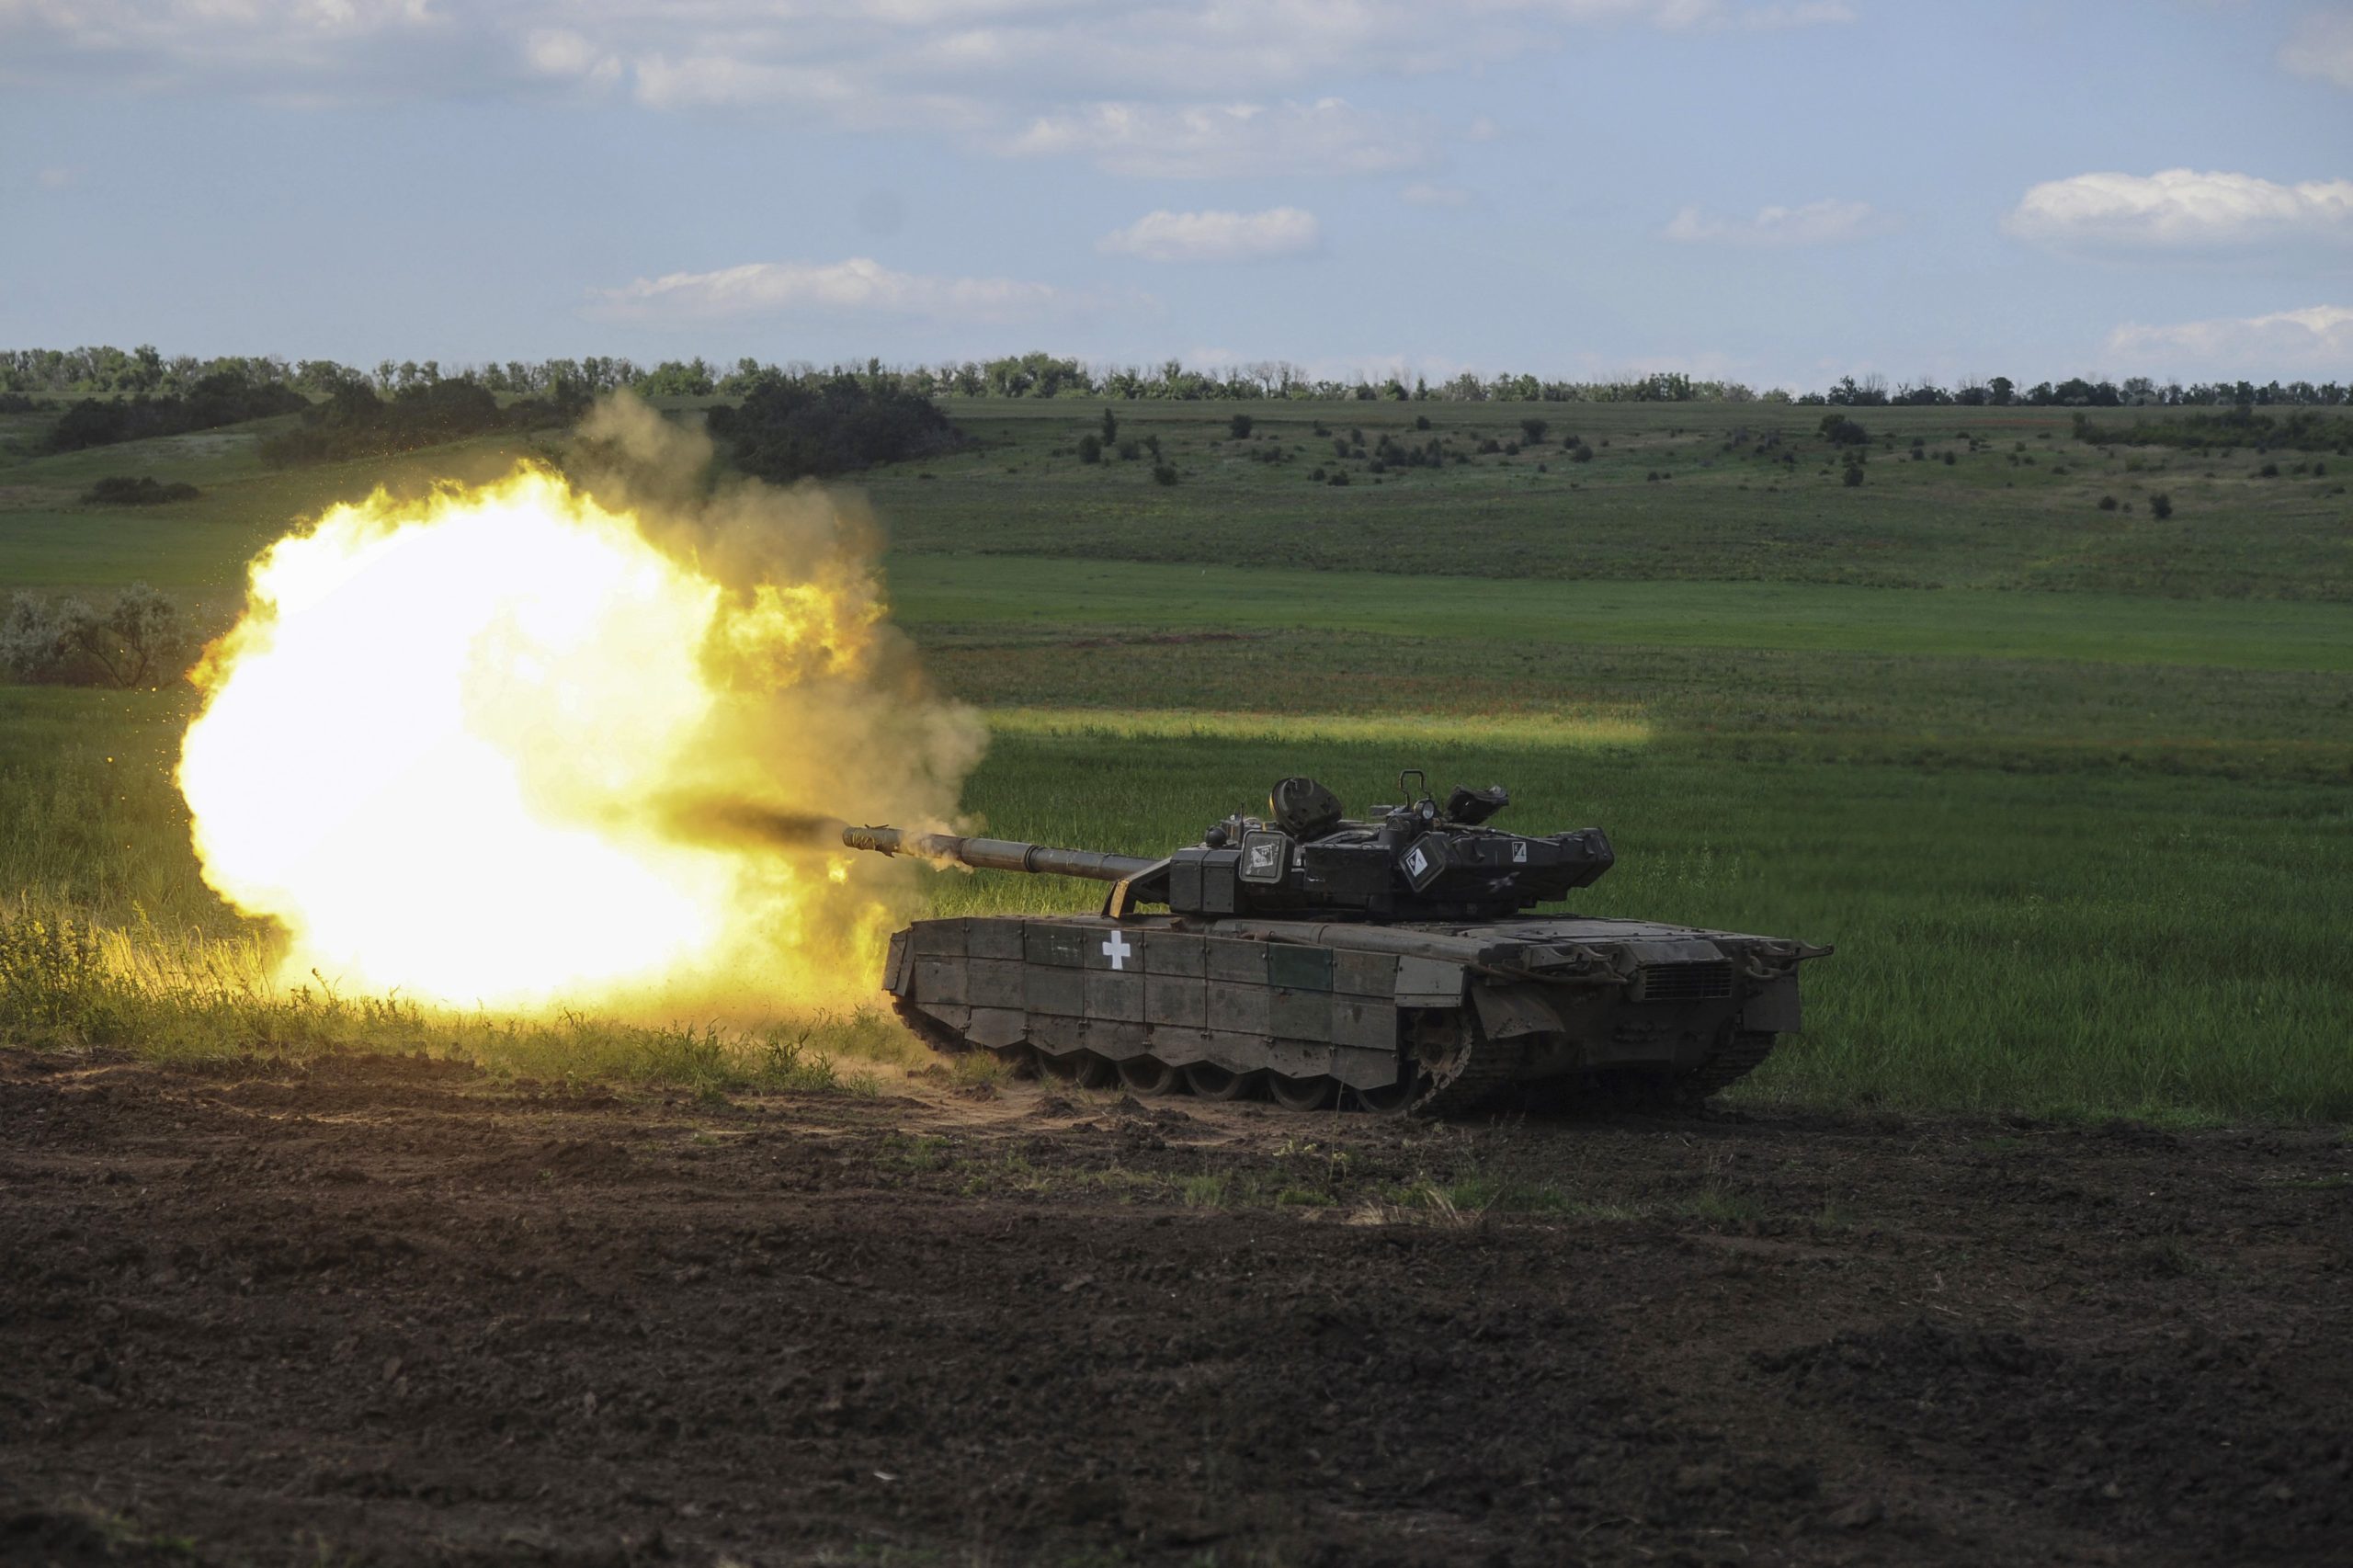 Καταστράφηκαν άρματα μάχης Leopard στο Κουπιάνσκ! – Οι Ουκρανοί τα μετέφεραν από Bέρμποβο-Ραμποτίνο (βίντεο)